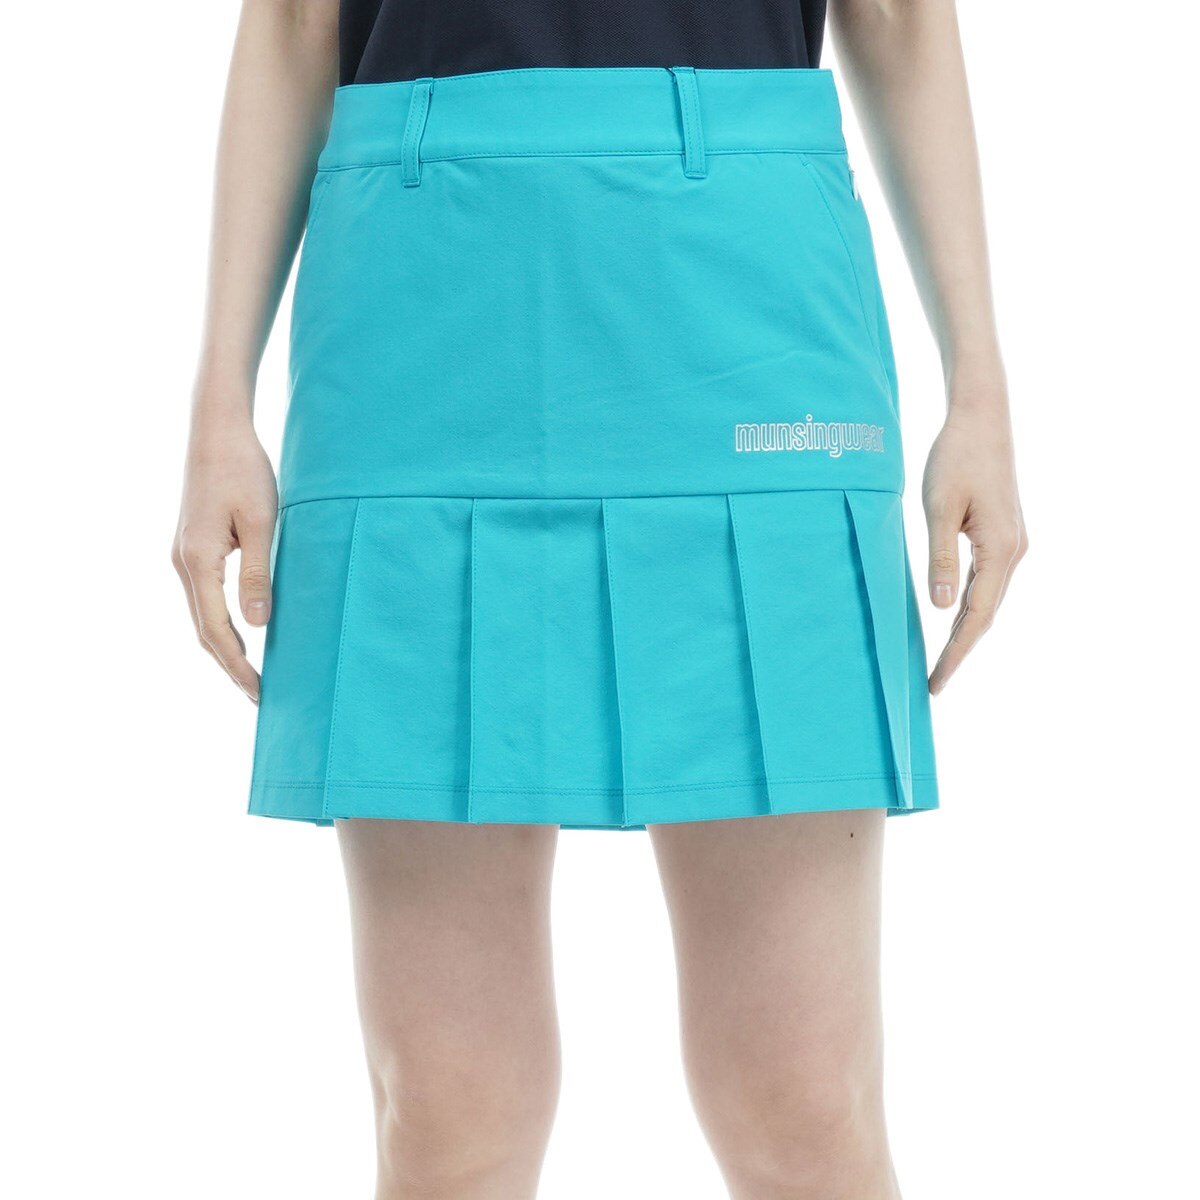 【美品】 Munsingwear スカート インナーパンツ付き サイズ9